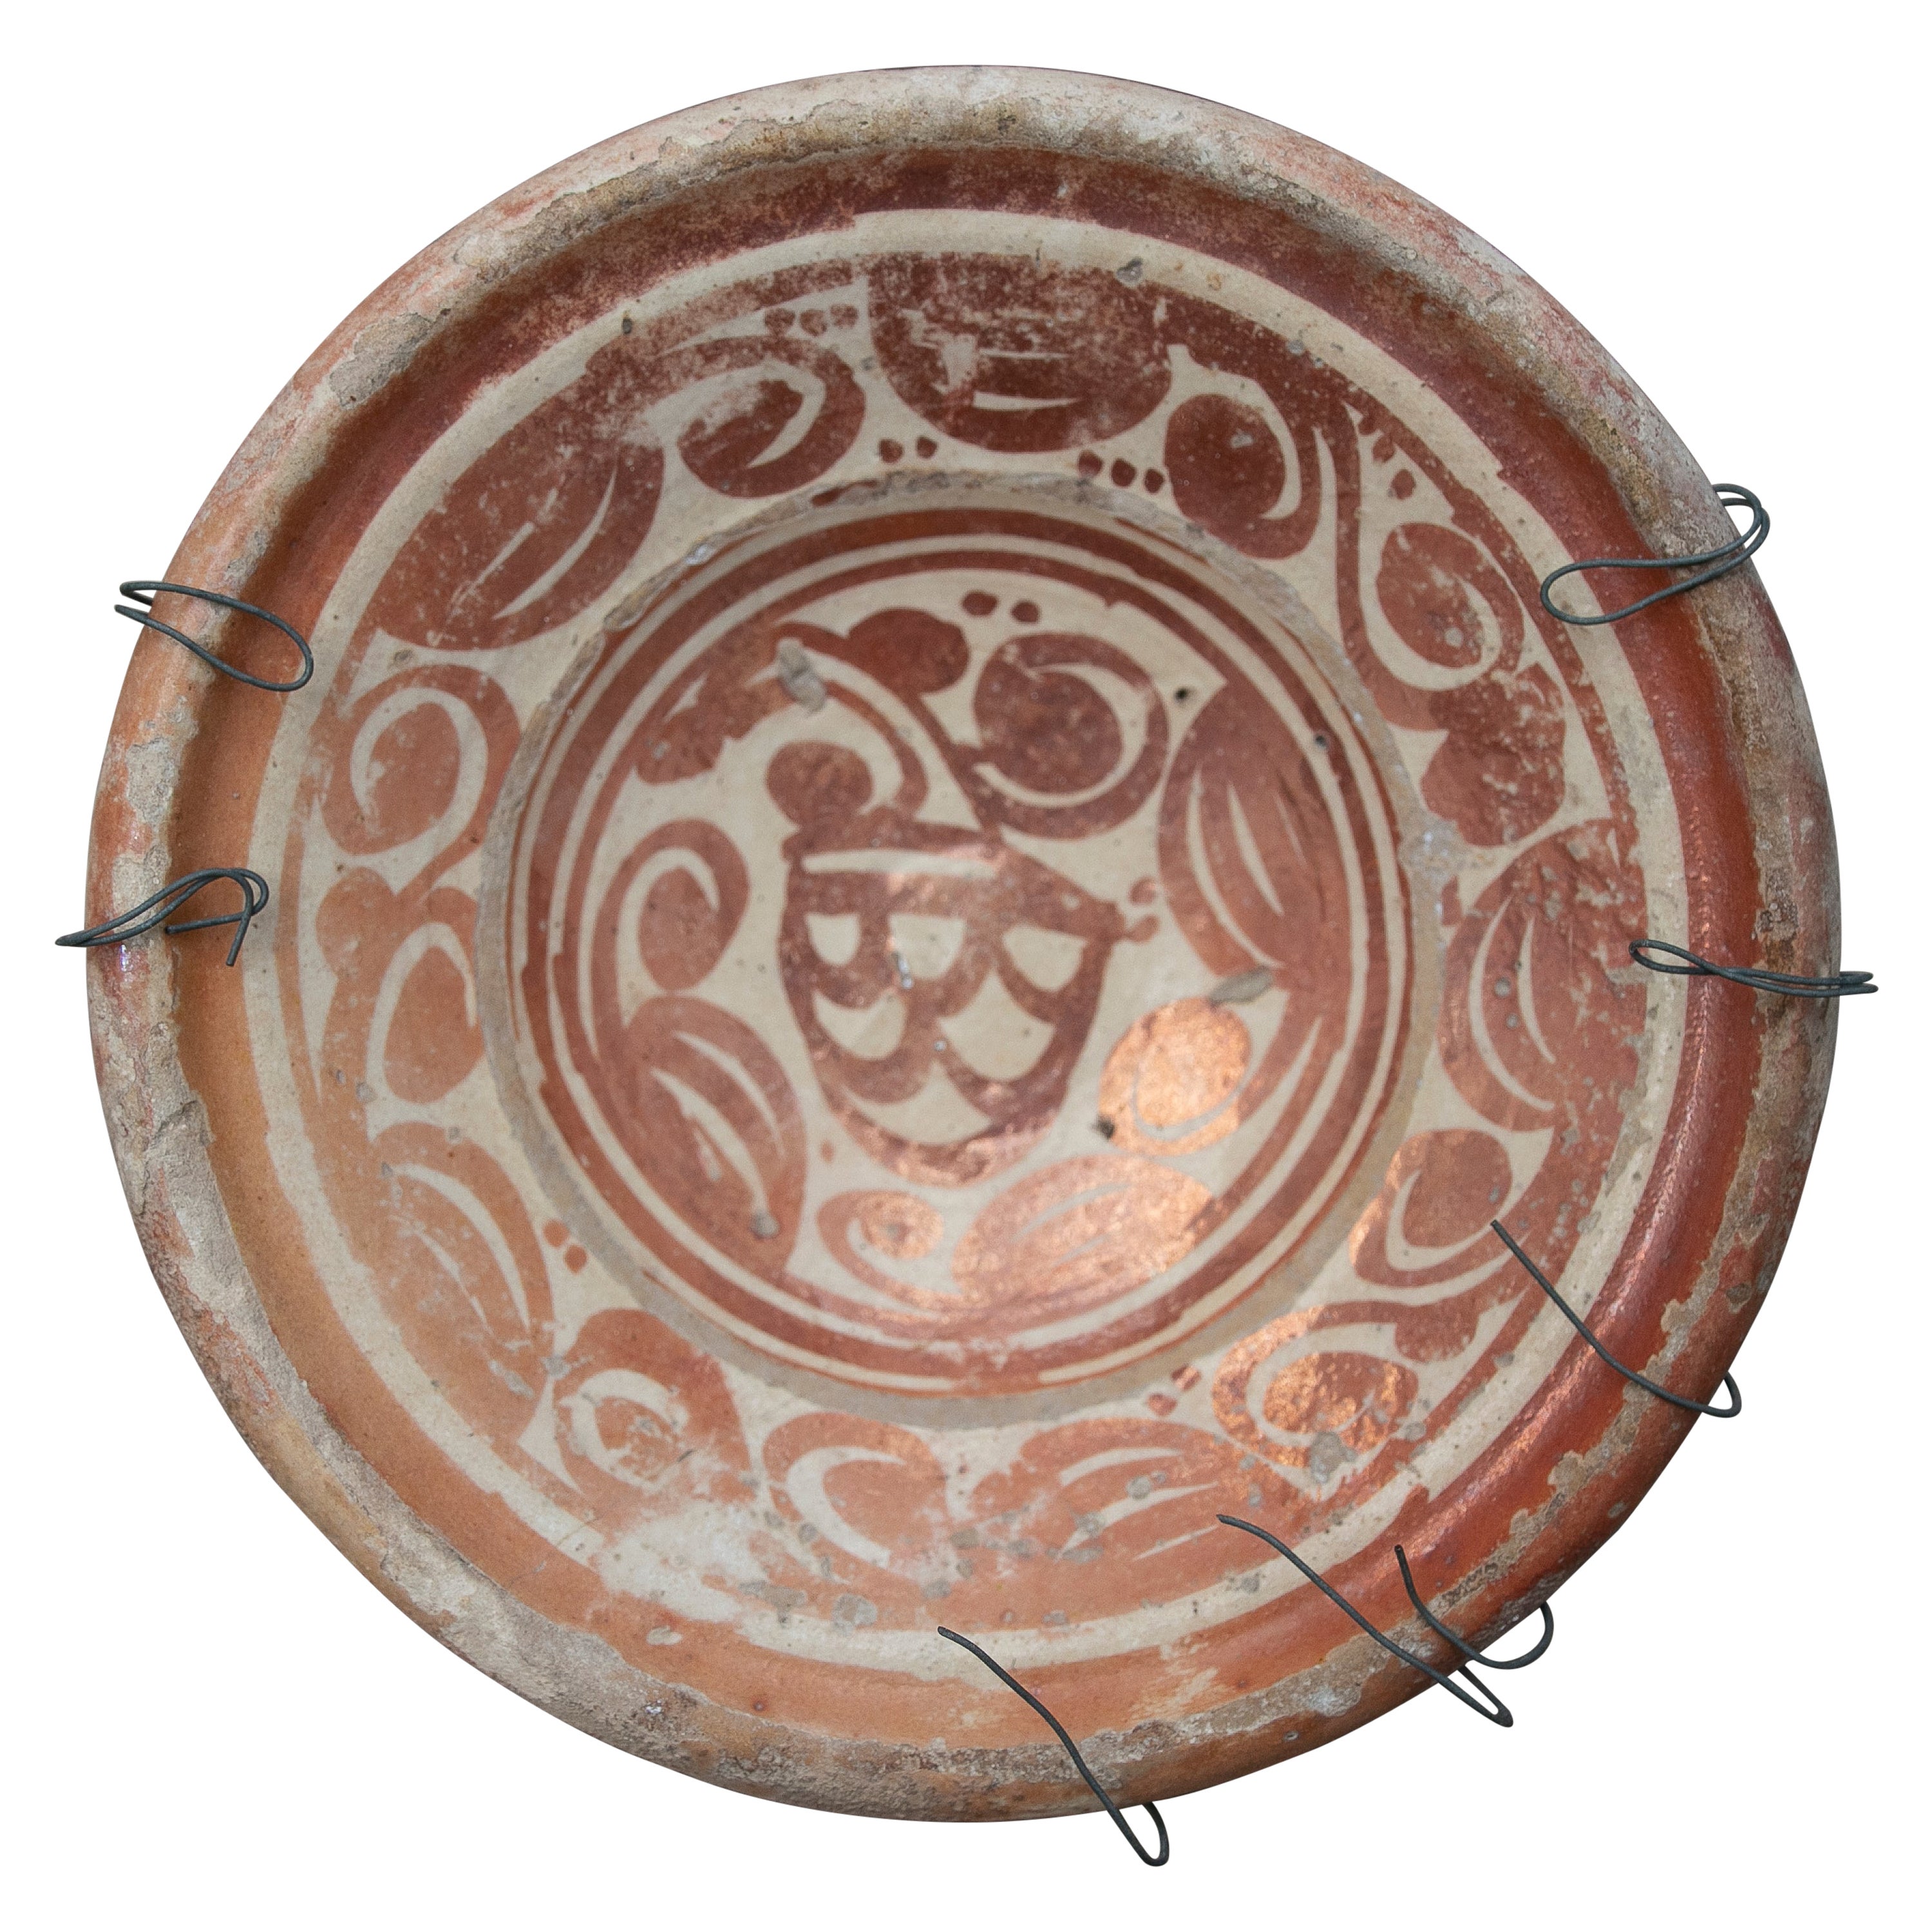 Spanischer Valencian Manises-Lüstergeschirr-Keramikteller aus dem 17. Jahrhundert